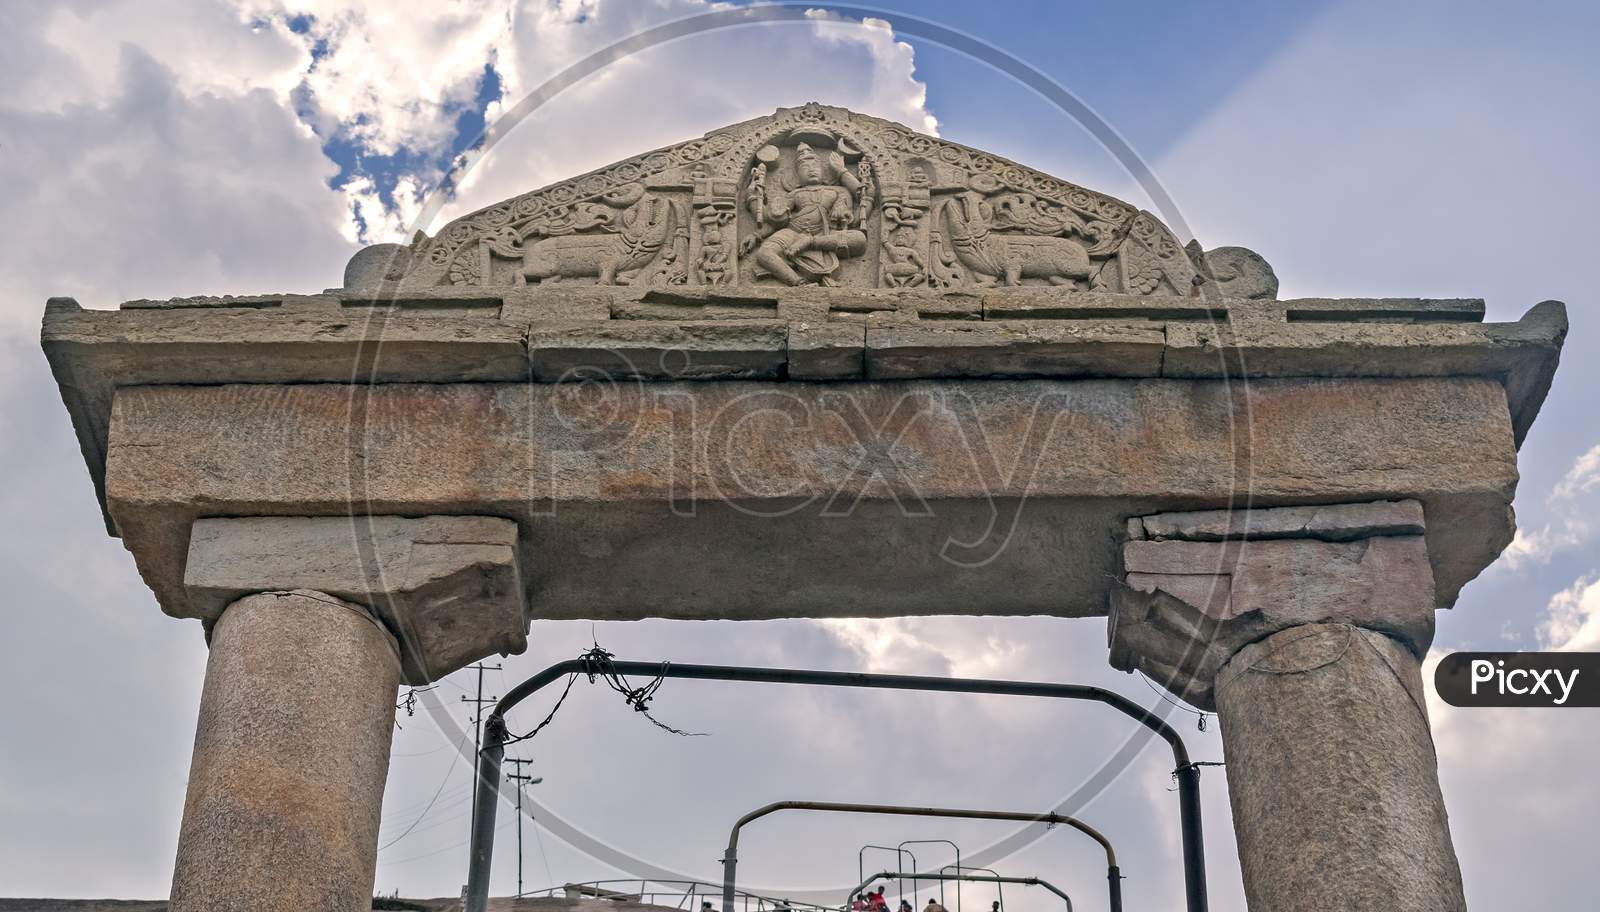 Stone Carved Gate Leading To The Gomateshwara Temple, Shravanbelgola.